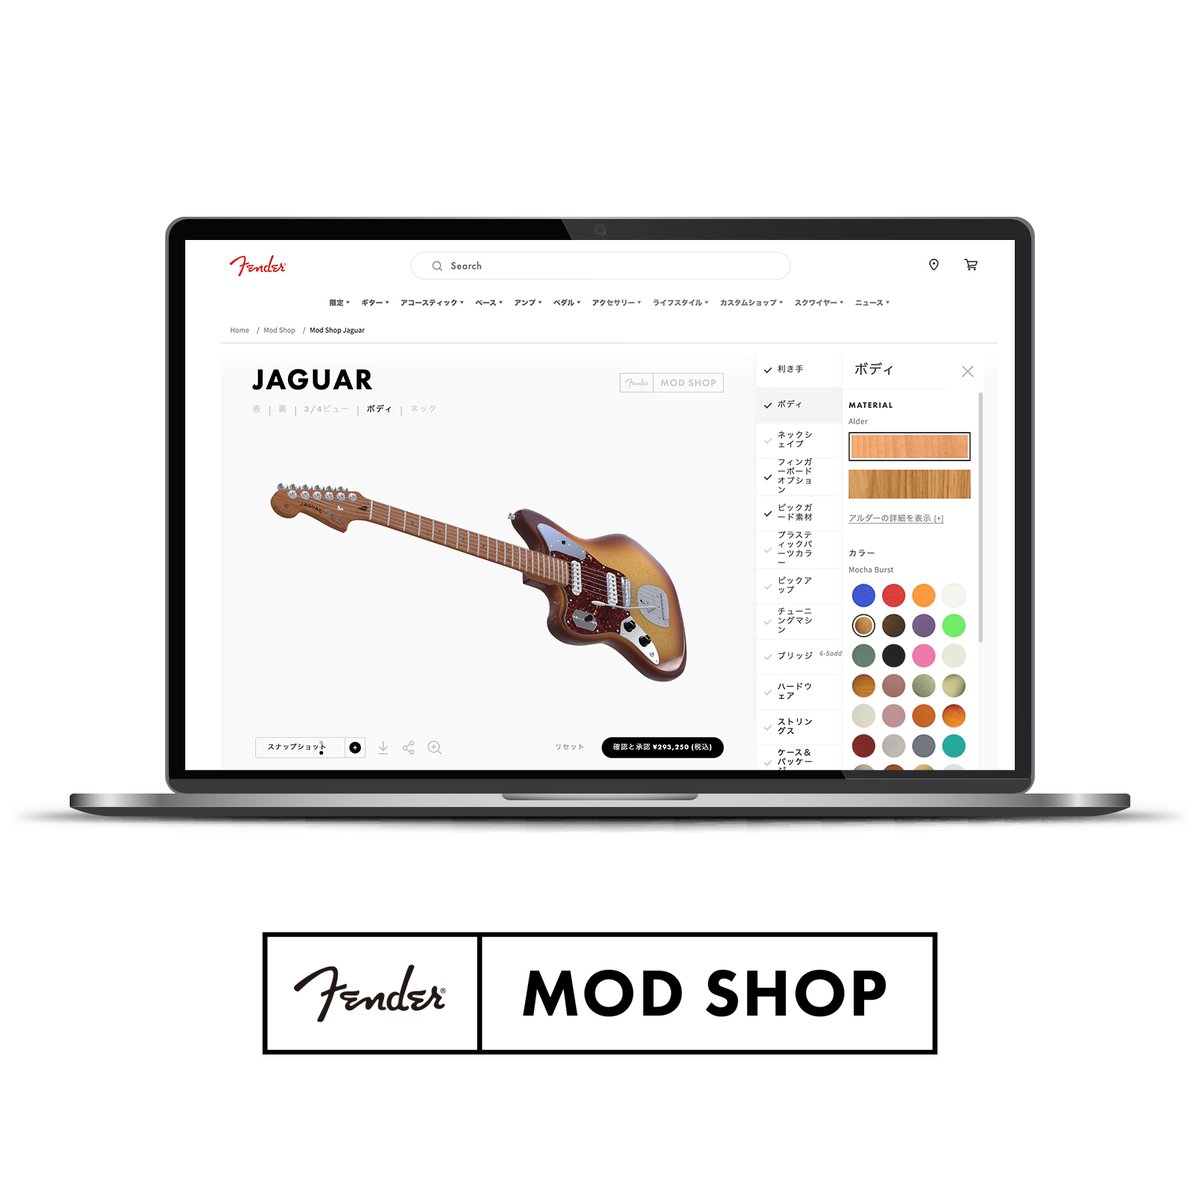 🎸The RIGHT choices for LEFTIES🎸

あなただけの1本がオーダーできる「Fender MOD Shop」には、左利きプレイヤーにも嬉しい豊富なチョイスが勢揃い❗️

自分にぴったりのレフティモデルに出会ってみませんか？

*アコスタソニックはレフティモデル対象外となります。

fender.com/ja-JP/mod-shop…